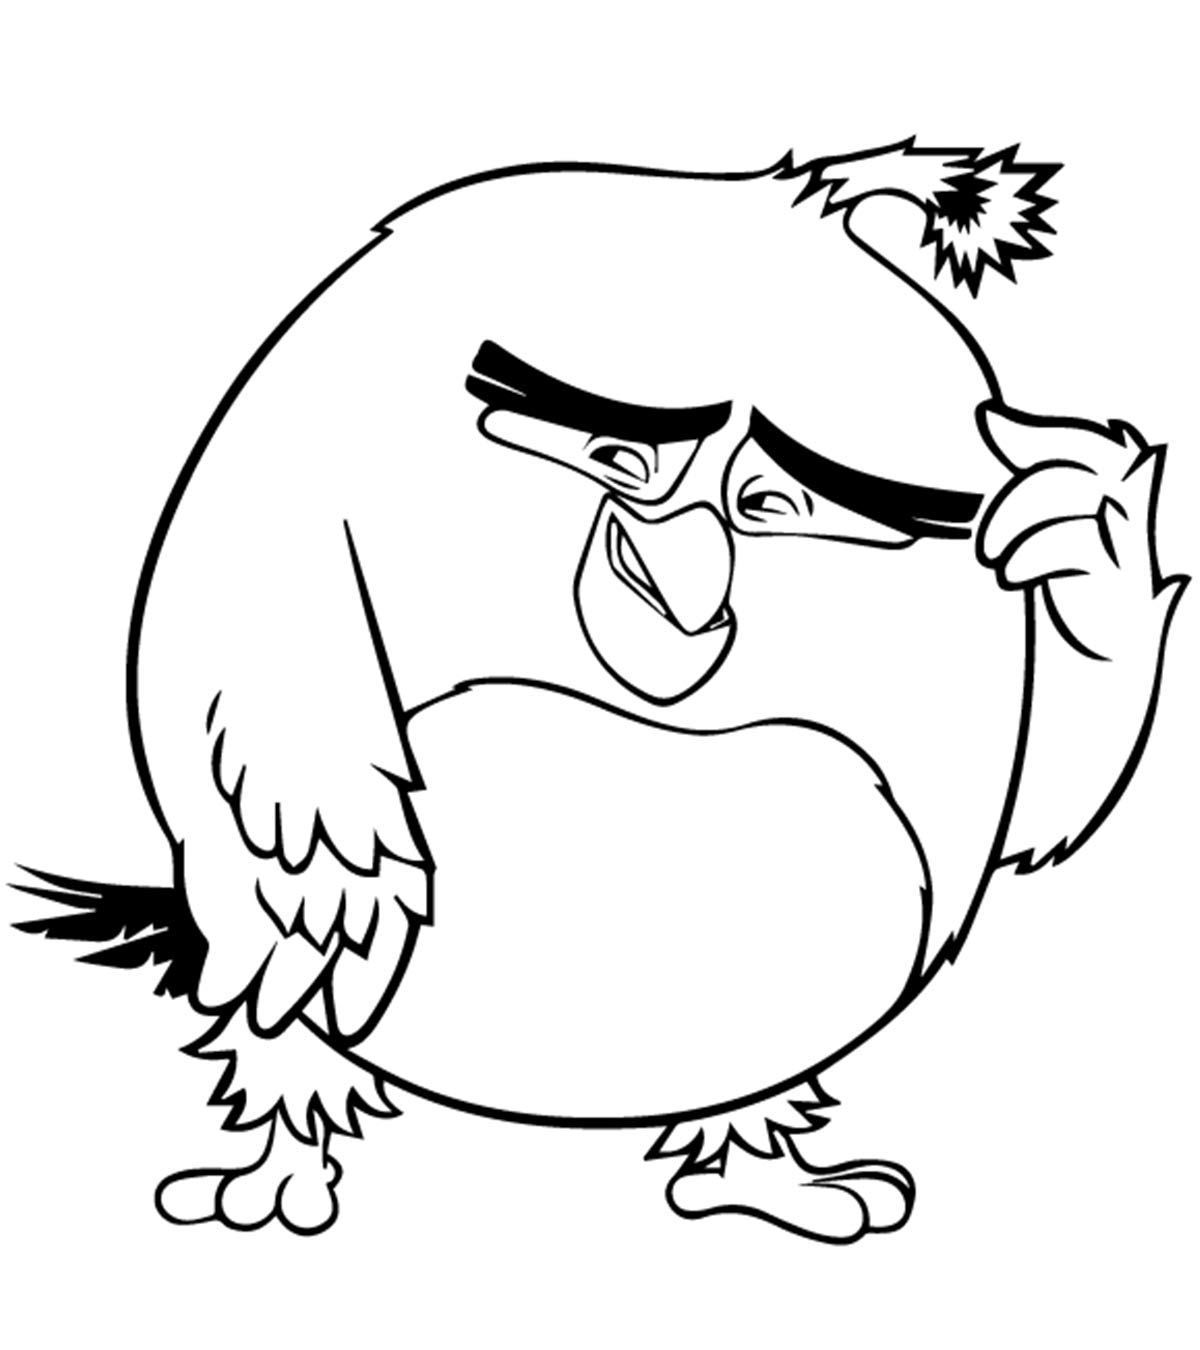 Tranh tô màu Angry Birds suy nghĩ